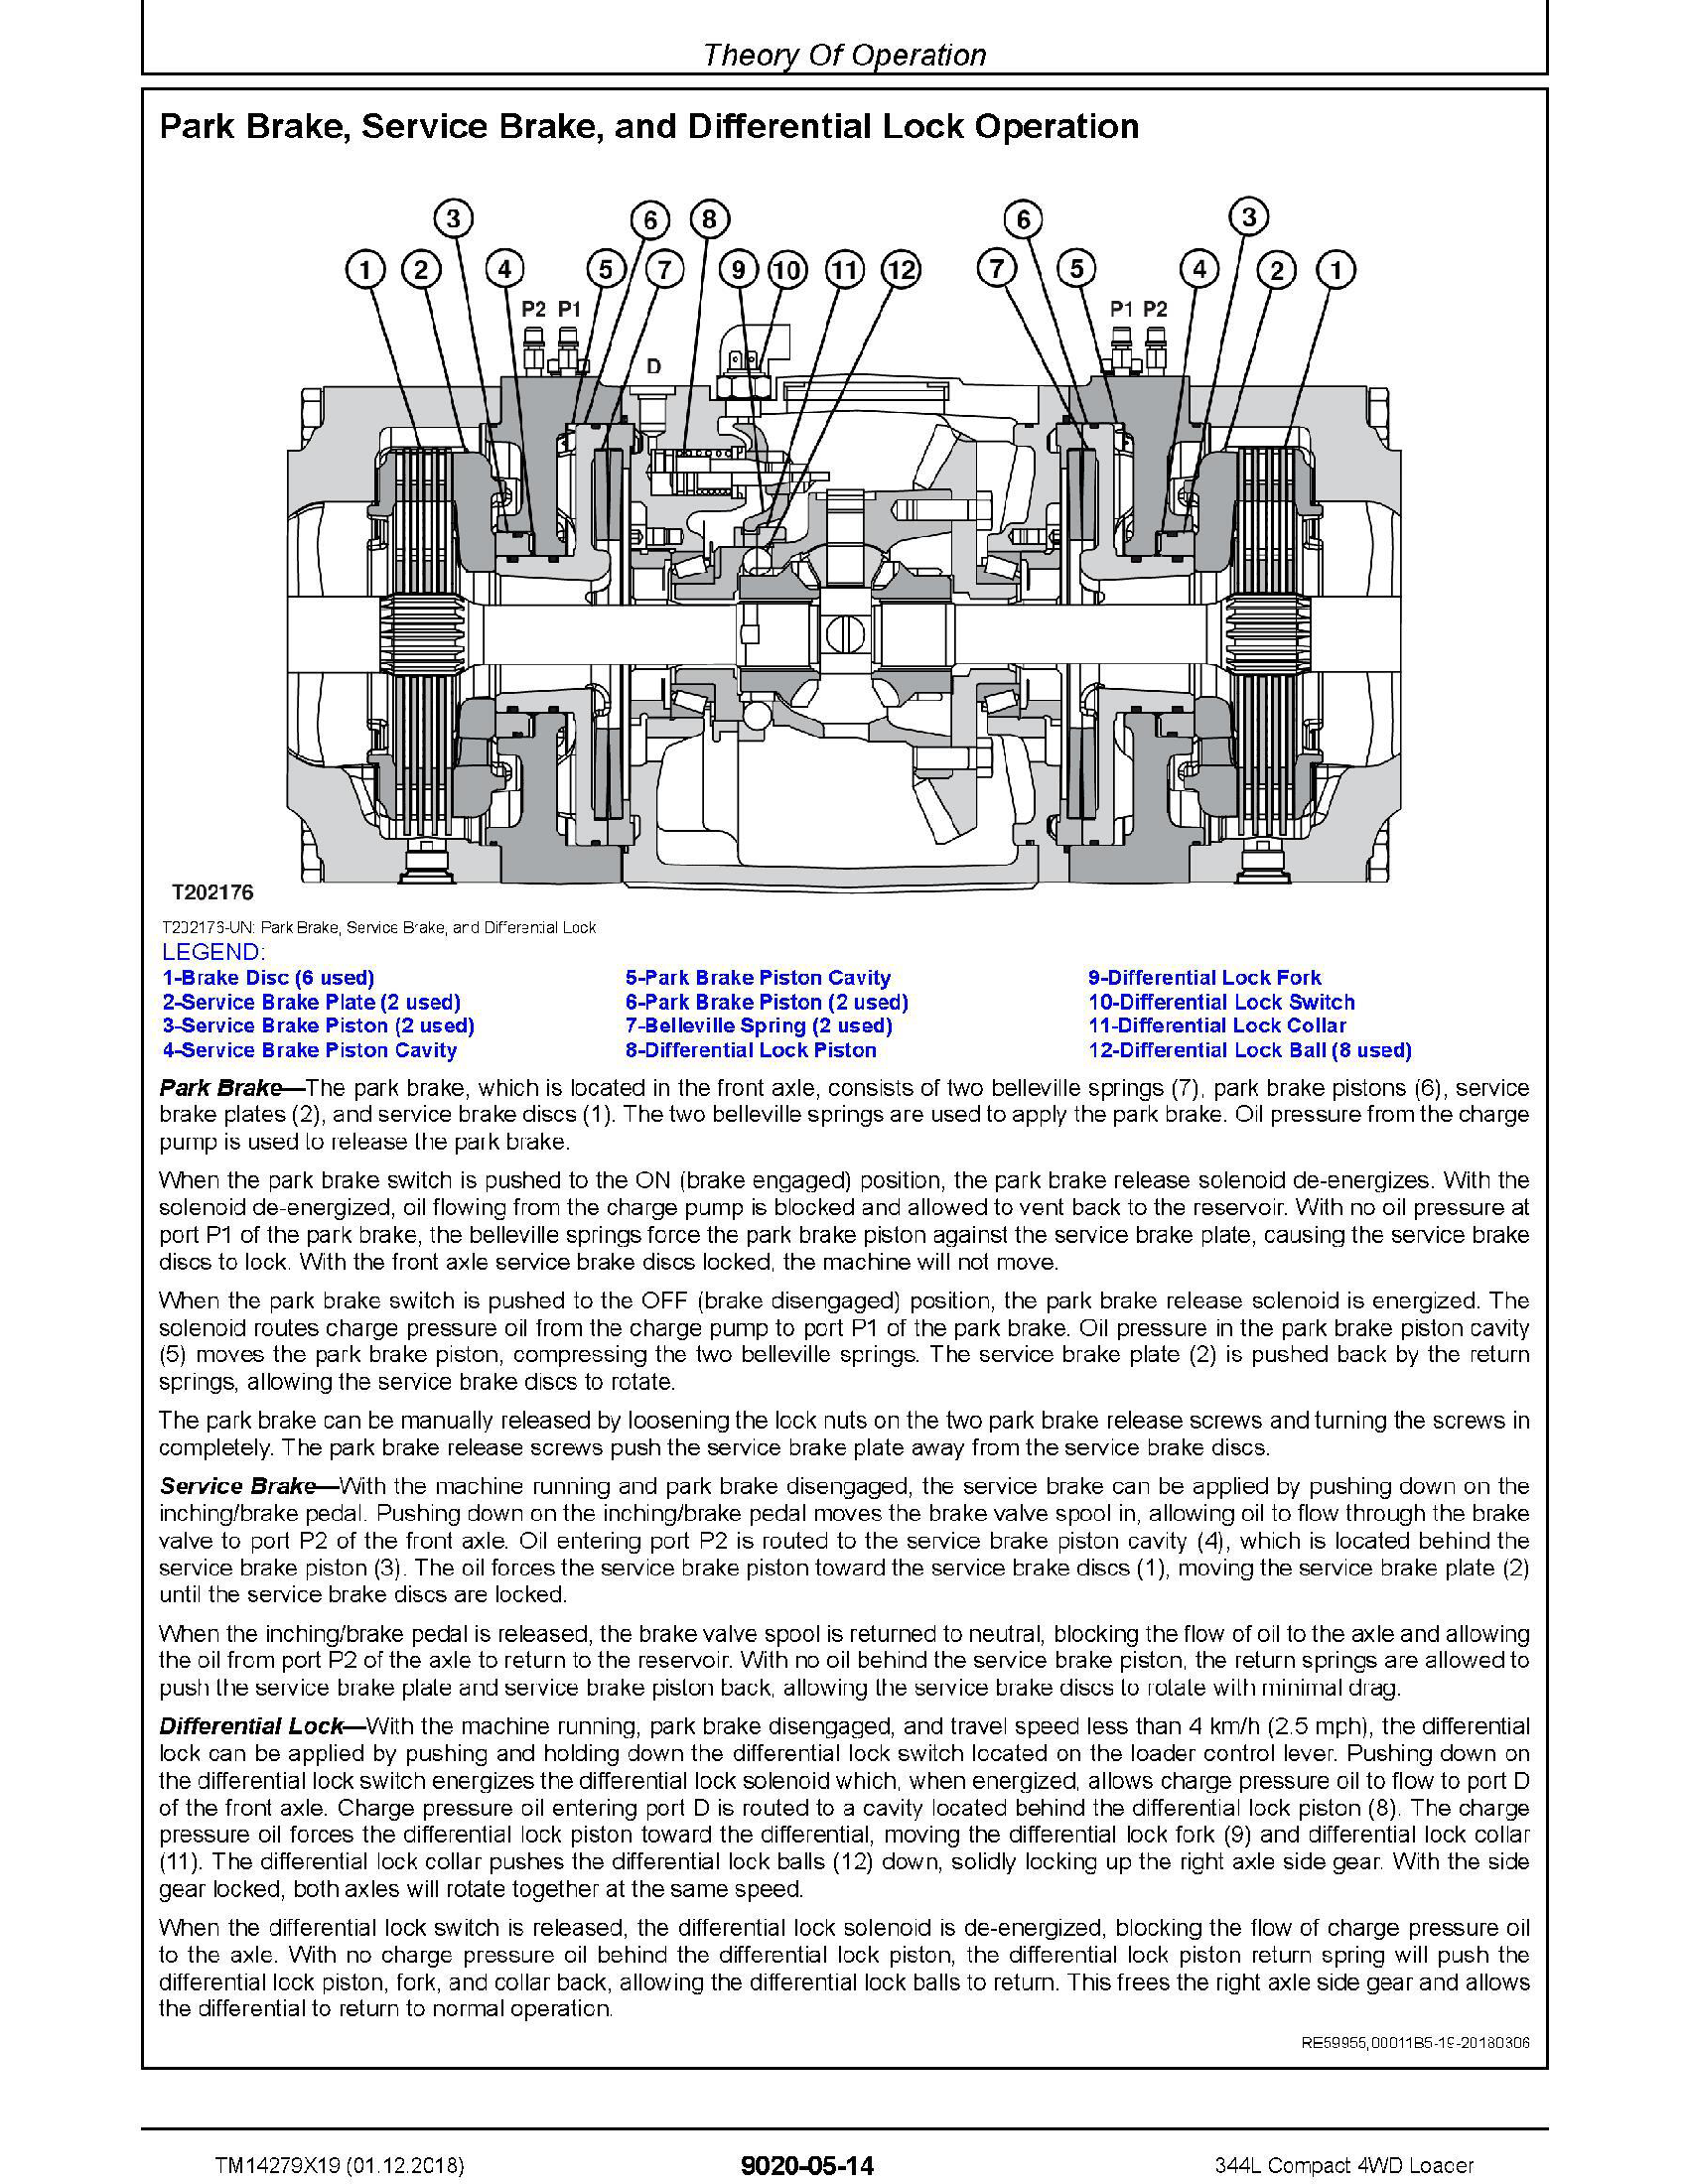 John Deere 4710 manual pdf